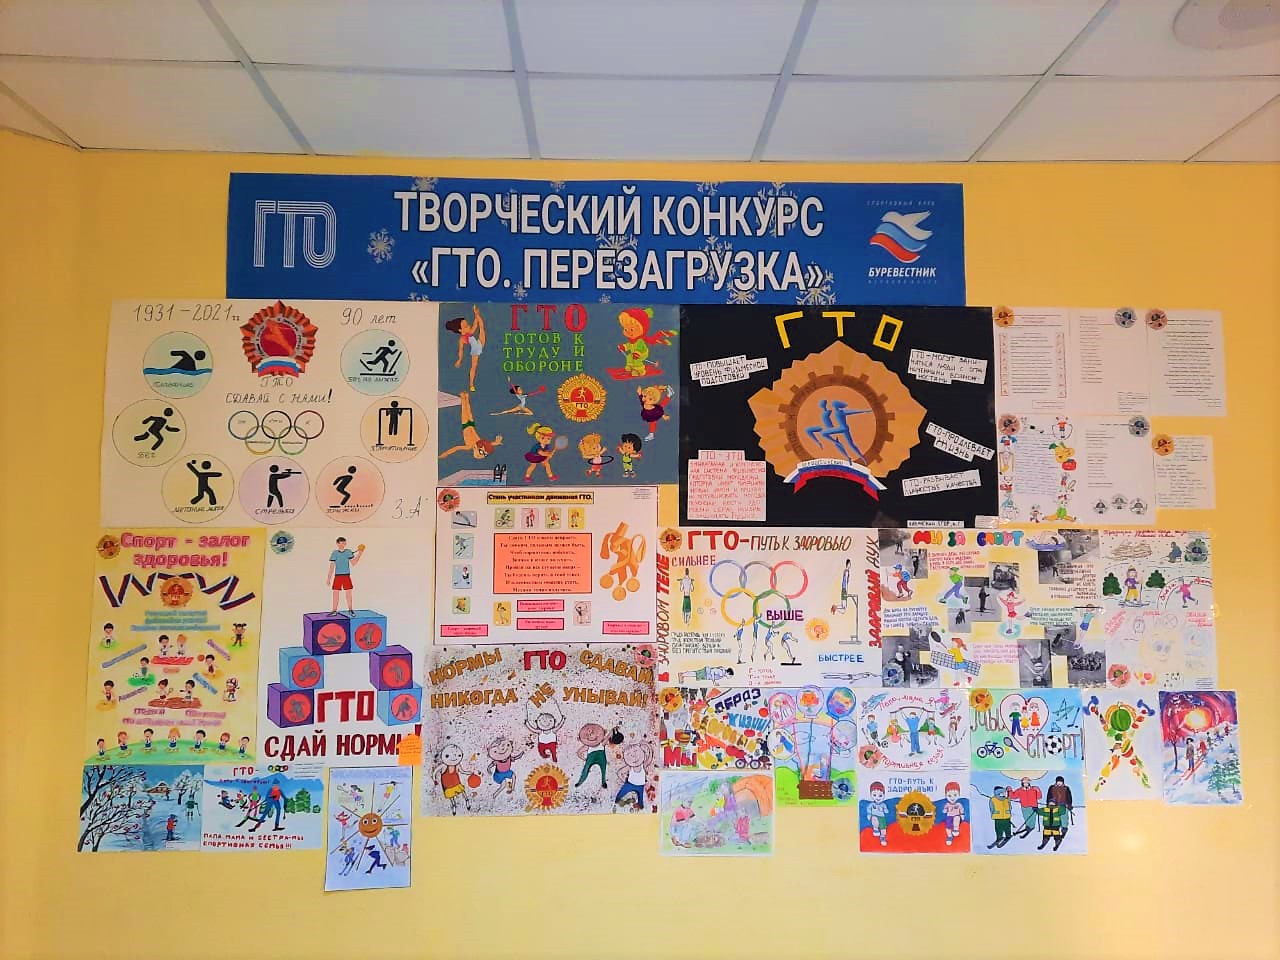 «ГТО. Перезагрузка»: в Ярославле подведены итоги творческого детского конкурса